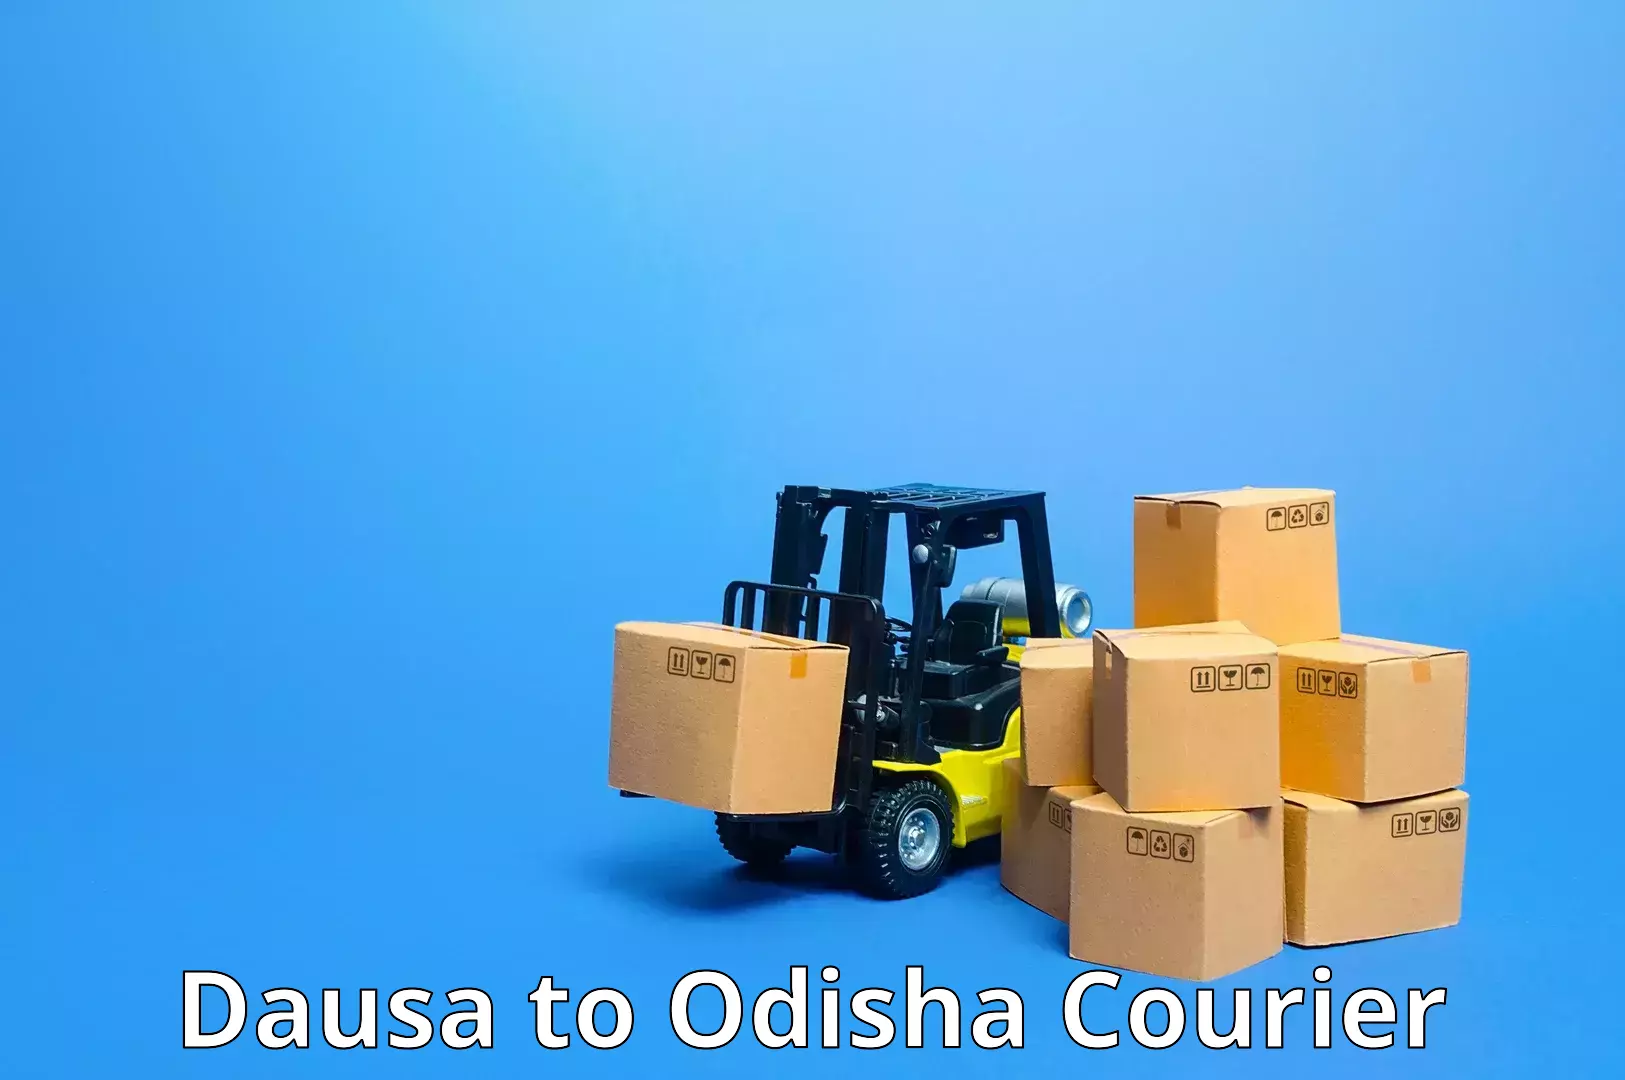 Domestic courier Dausa to Bhuban